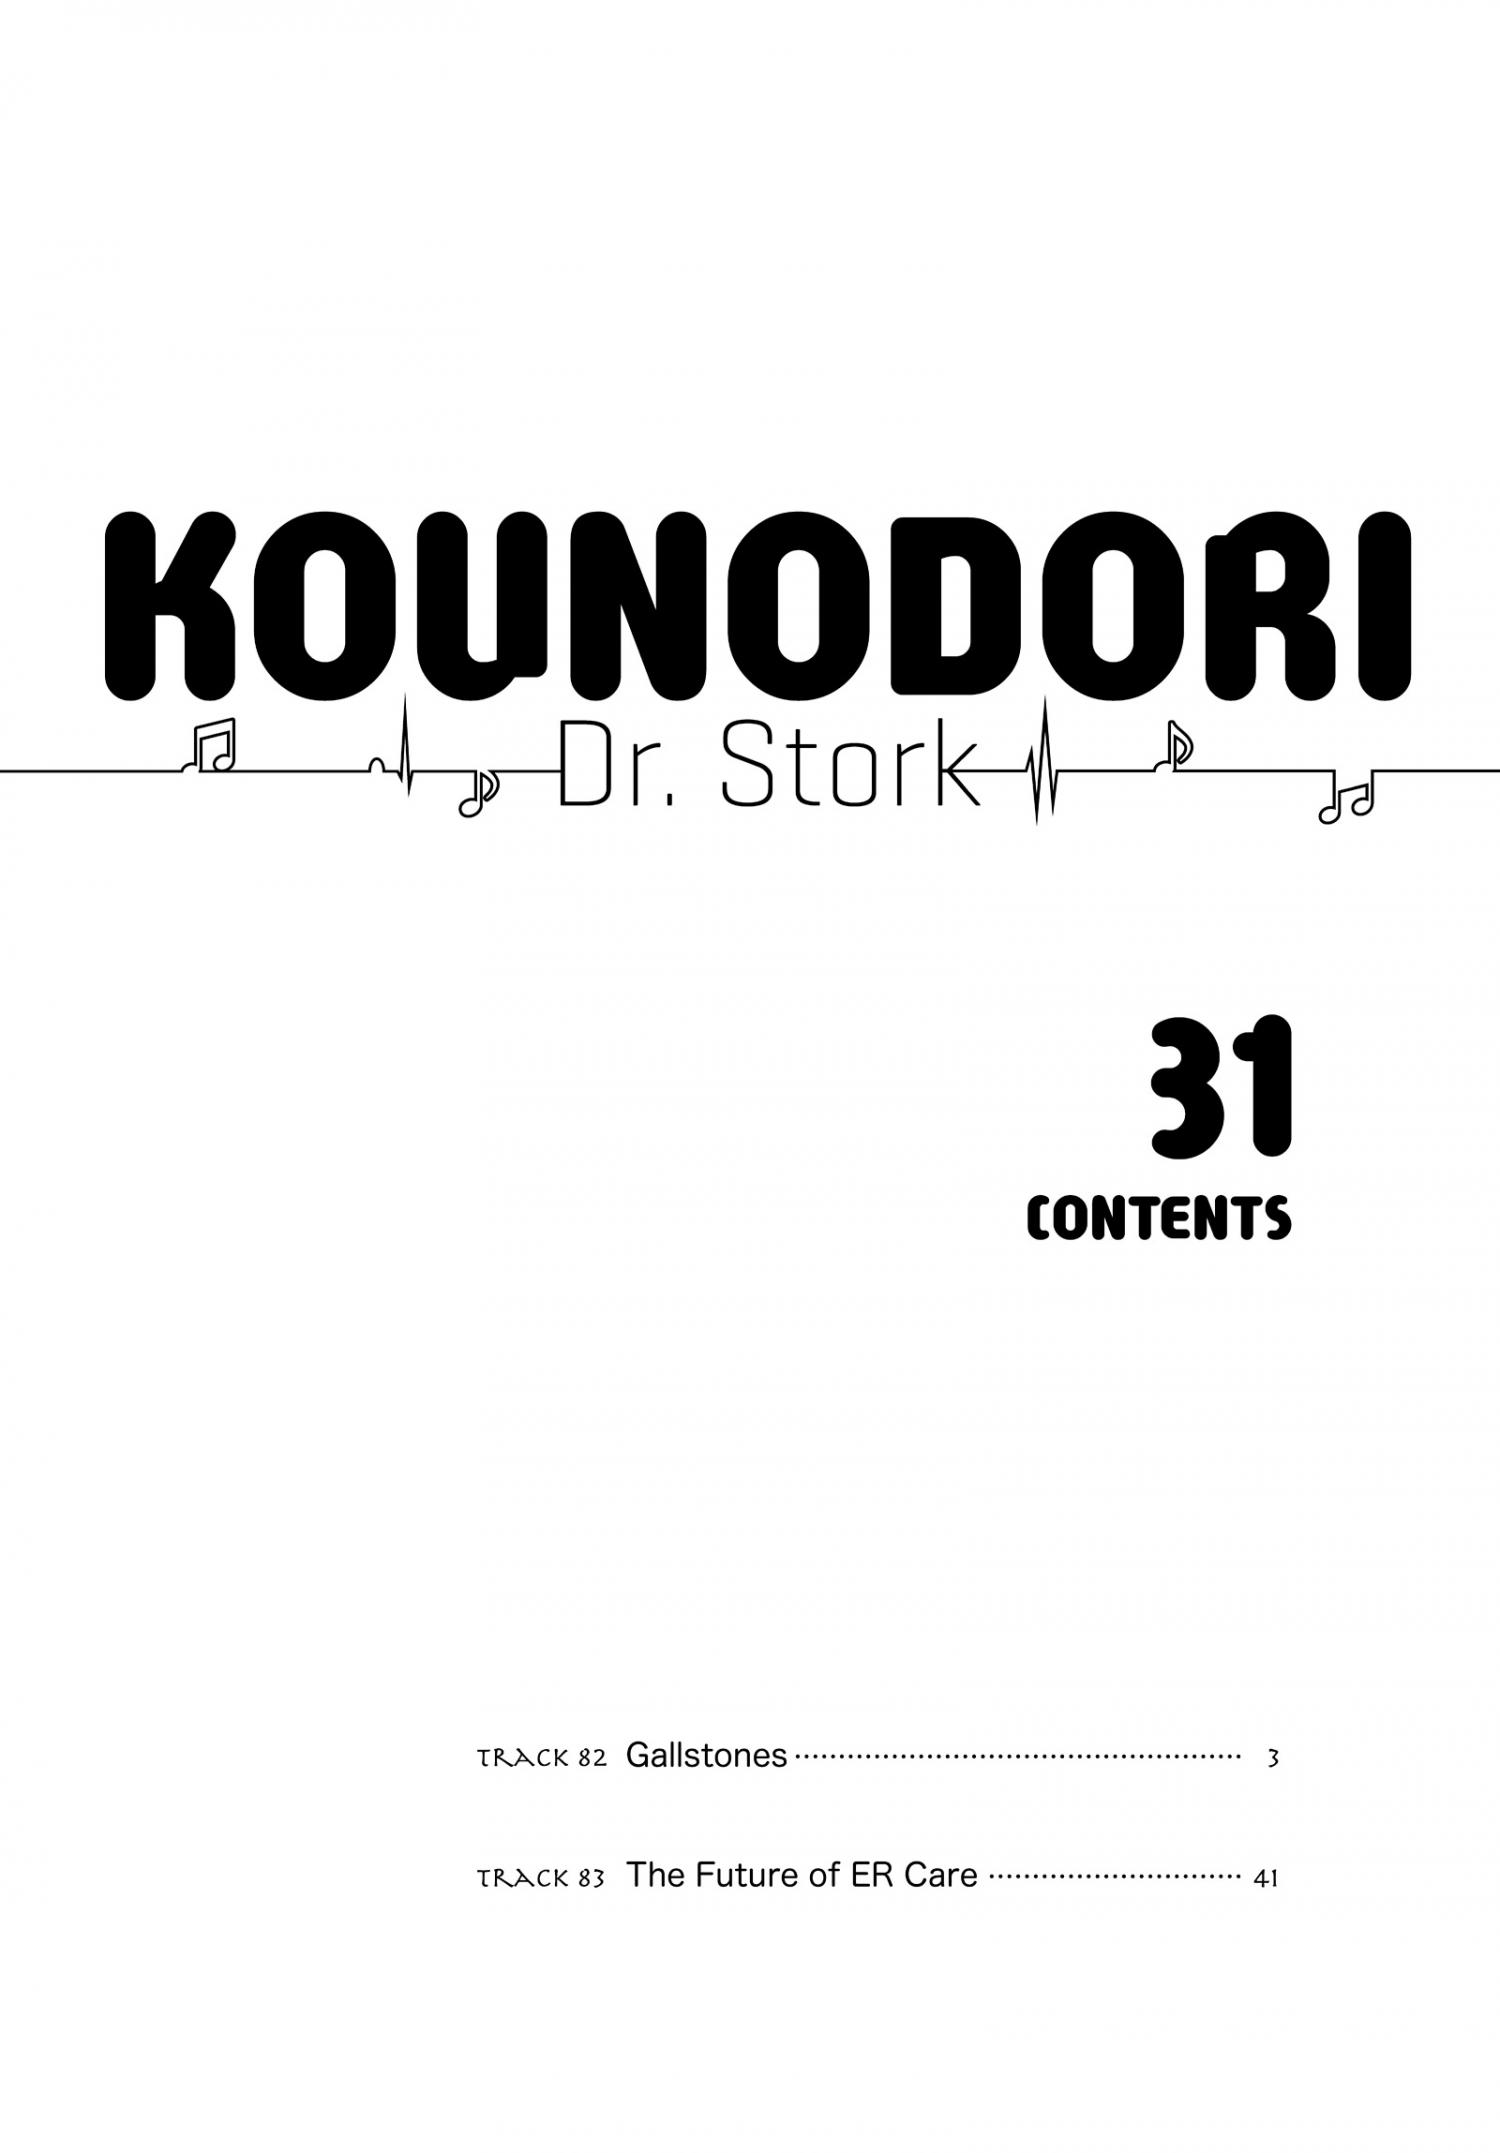 Kounodori - The Stork - episode 209 - 2